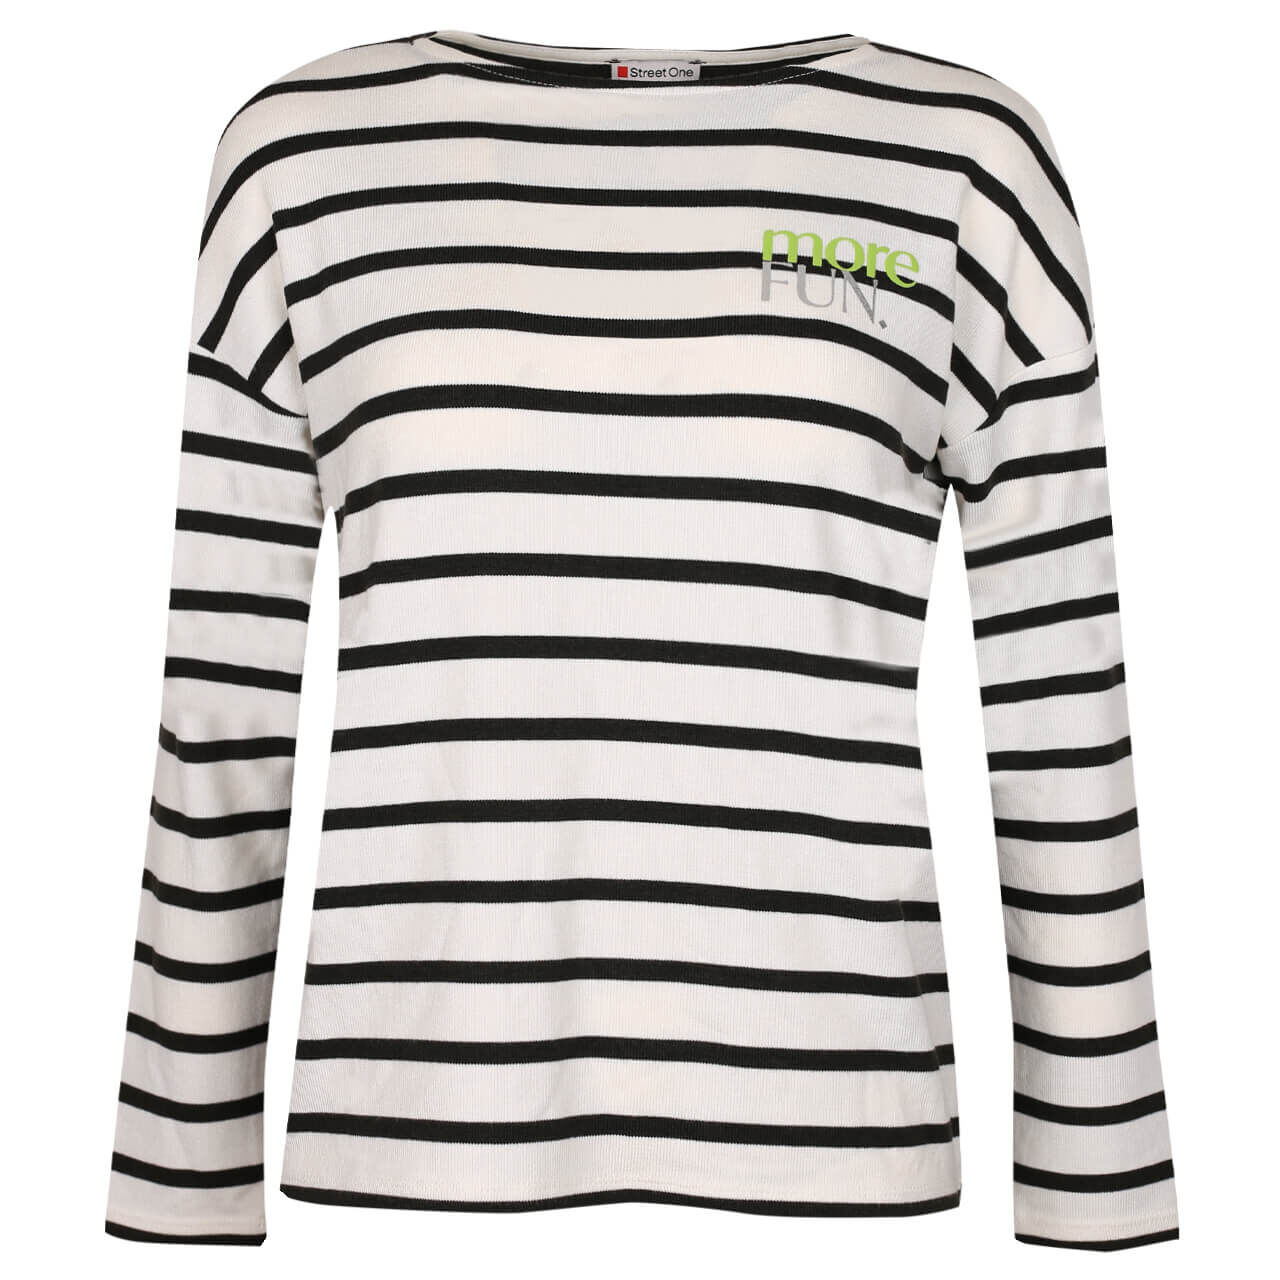 Street One Stripe Mix Partprint Pullover für Damen in Weiß gestreift, FarbNr.: 30108